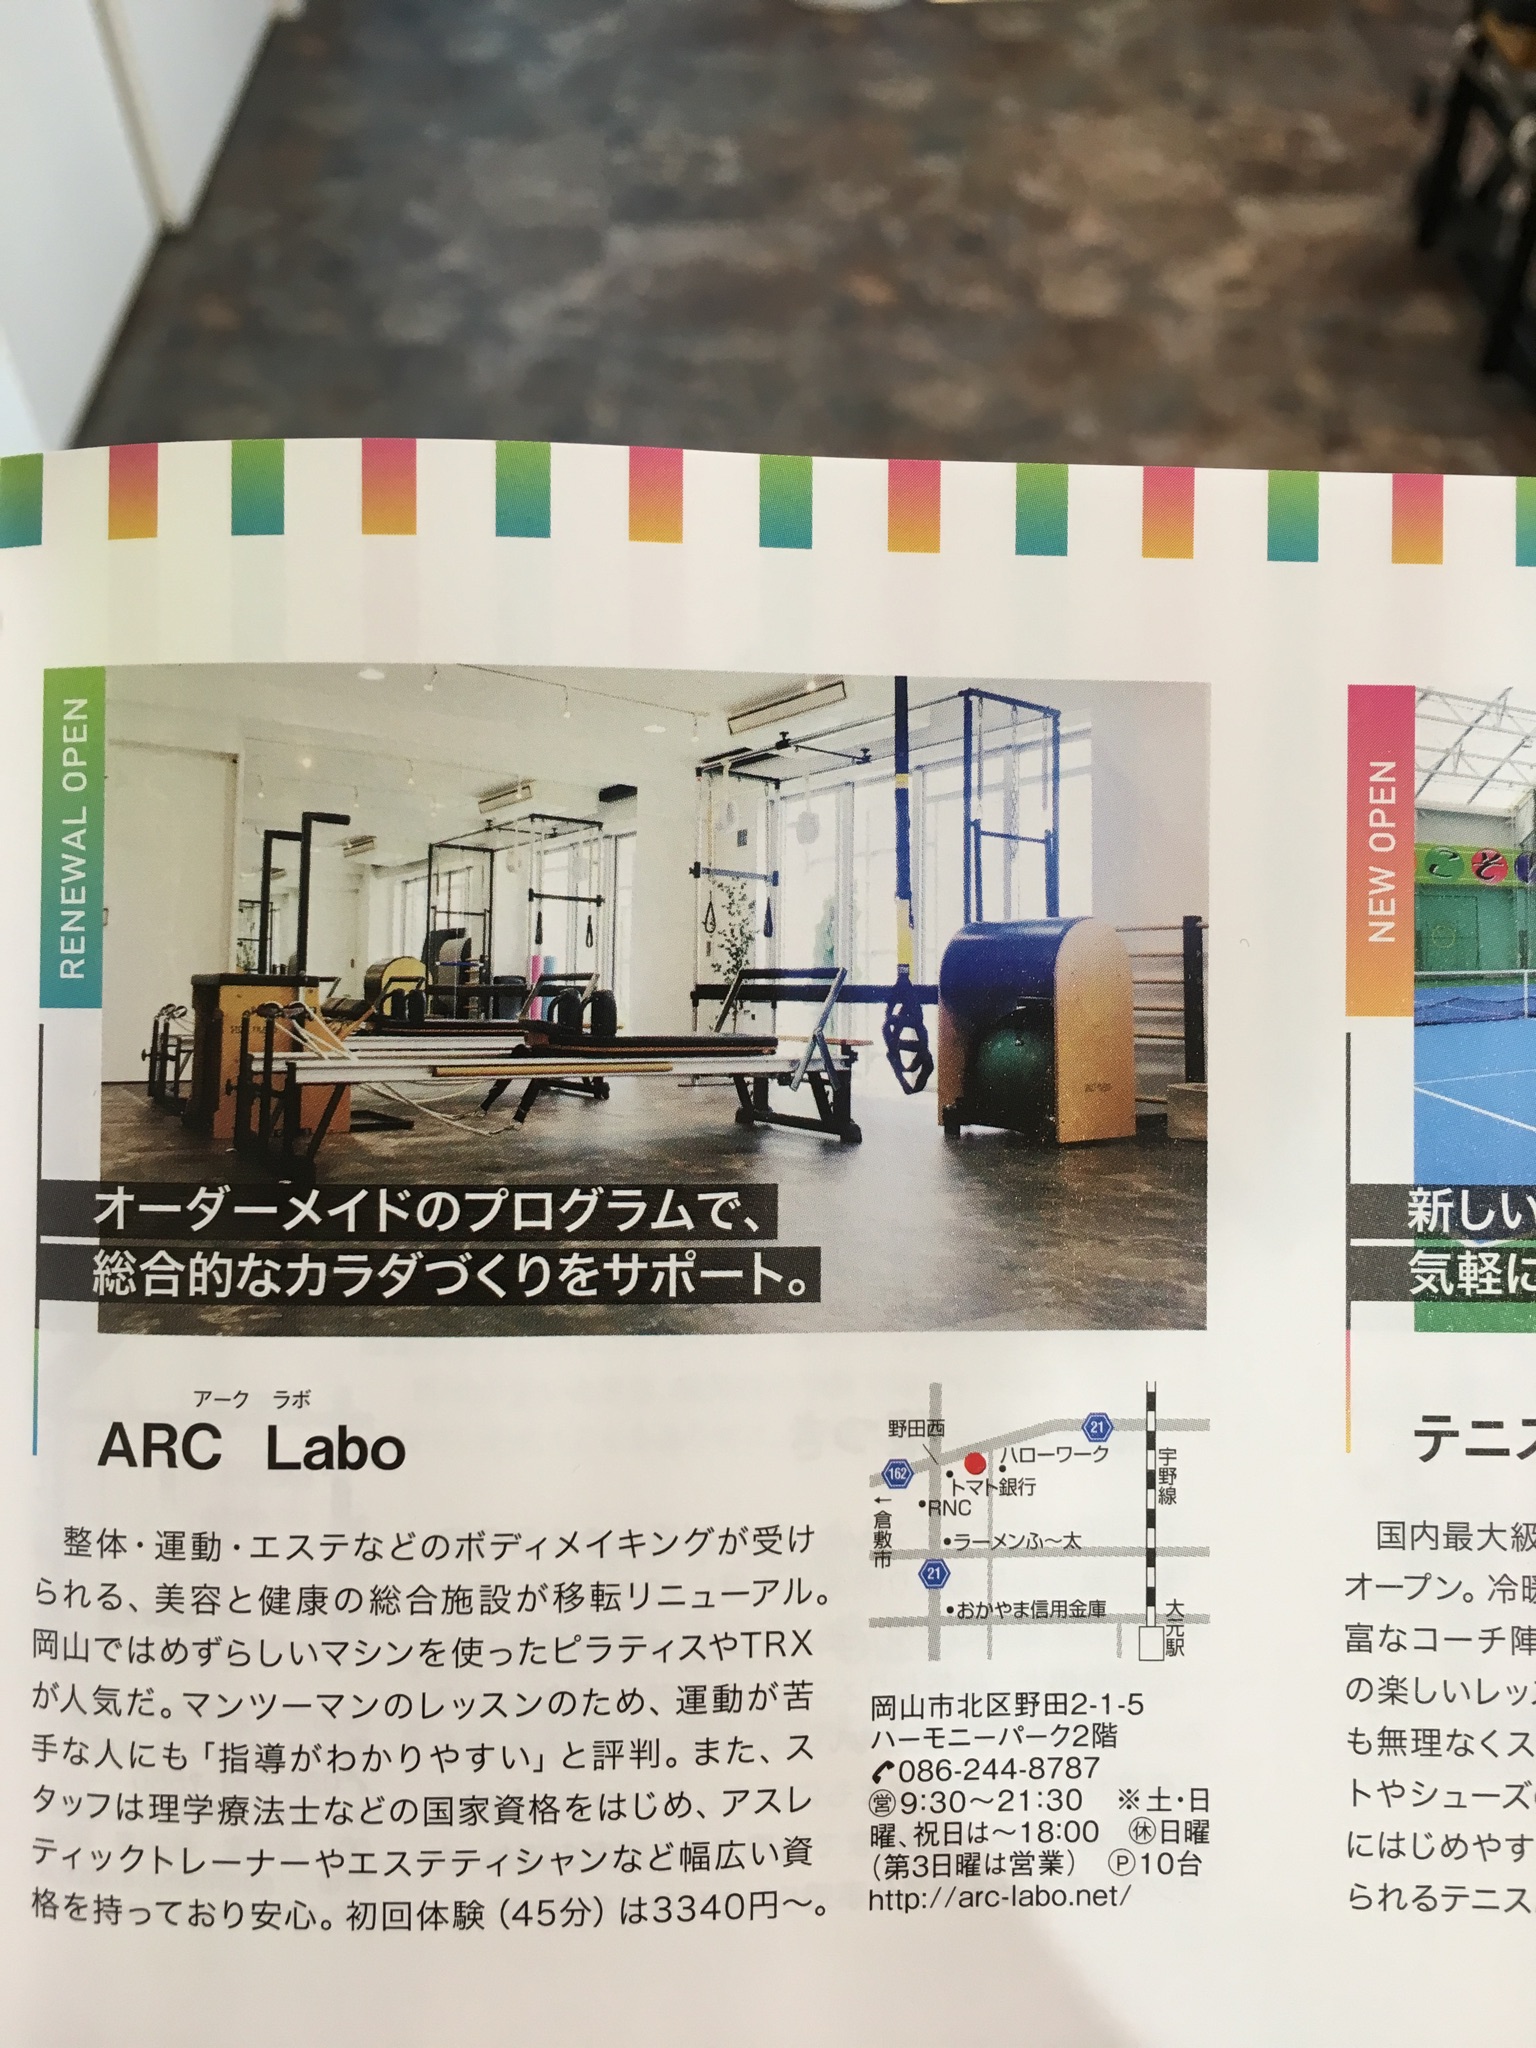 『月刊タウン情報おかやま』 に掲載♪ | ARC-Labo.(アークラボ) スタジオアーク / ビジュアーク ブログ